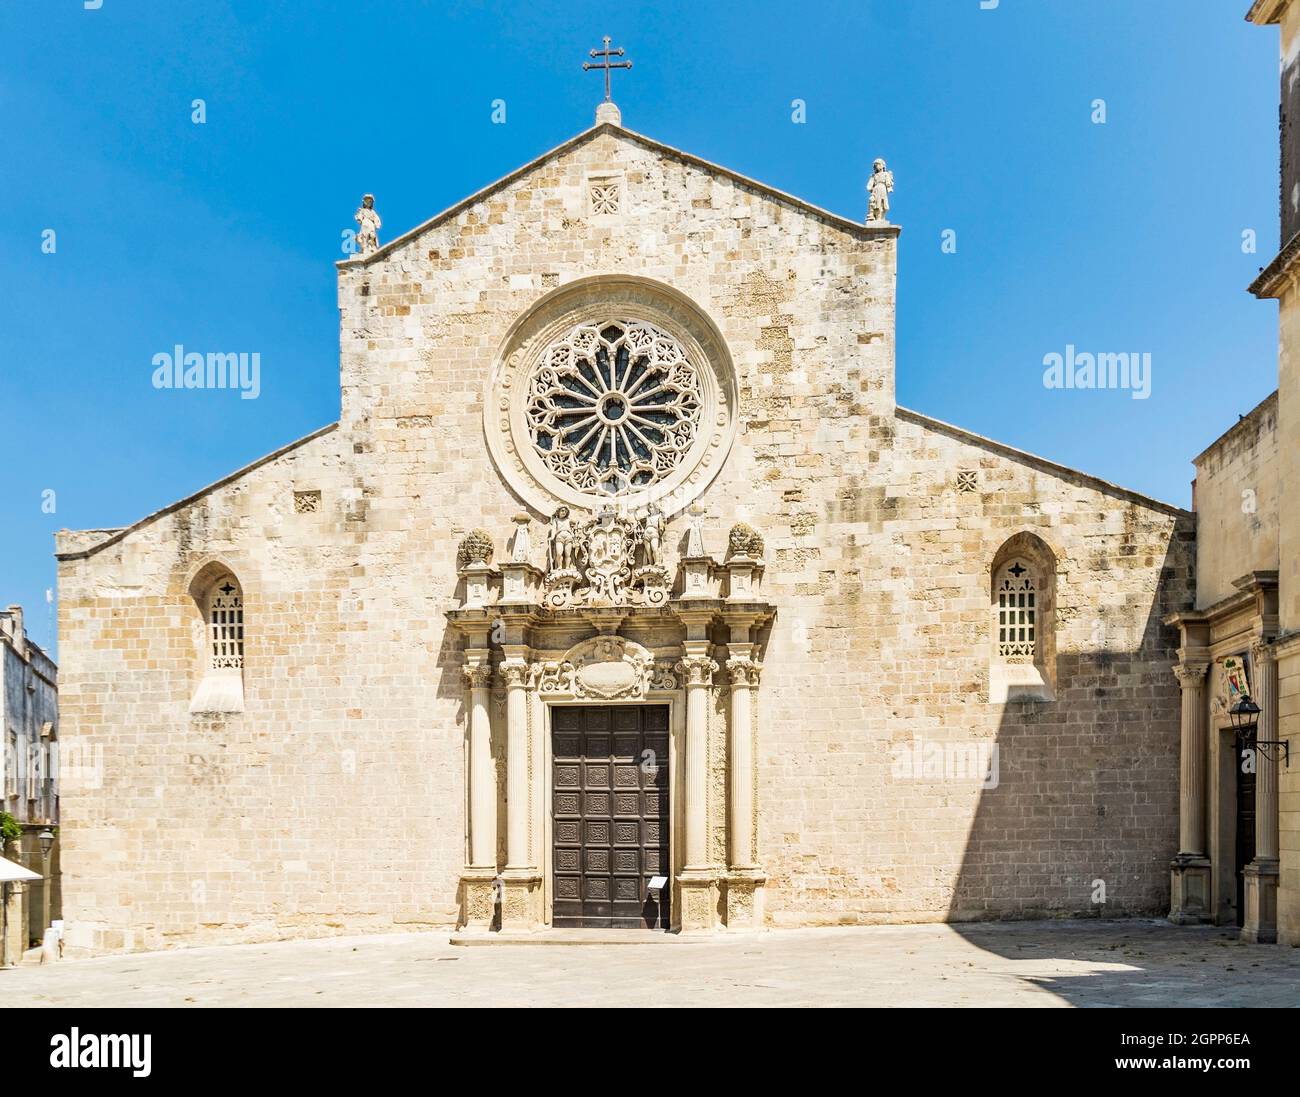 La fachada de la Catedral de Otranto, con estatuas y un rosetón , en Otranto, provincia de Lecce, Salento, región de Puglia, Sur de Italia Foto de stock